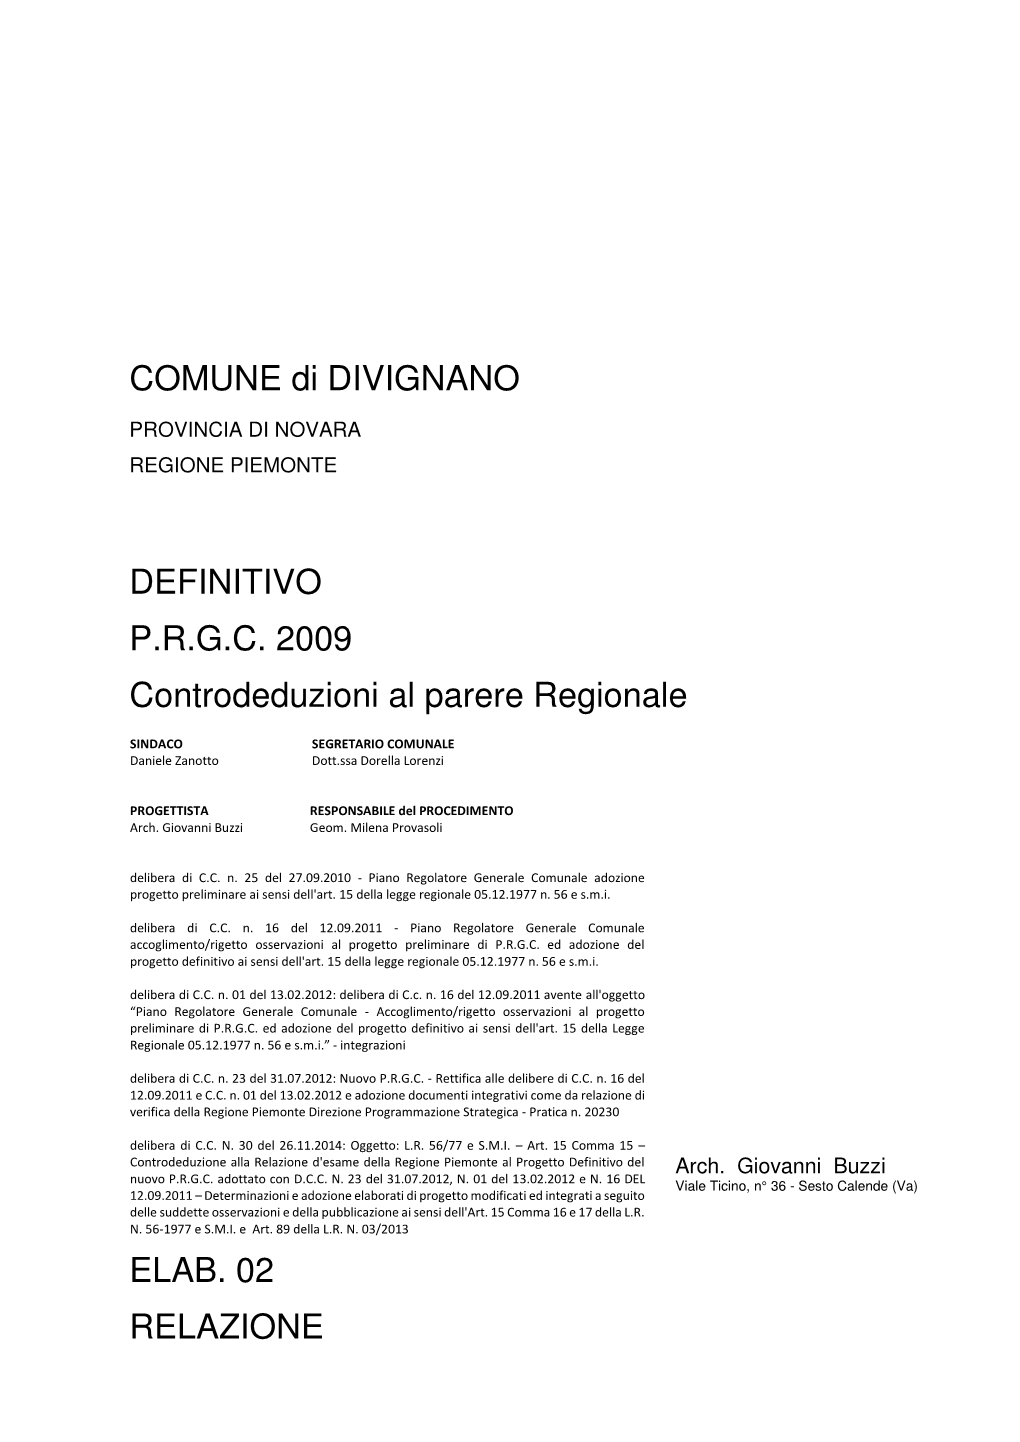 COMUNE Di DIVIGNANO DEFINITIVO P.R.G.C. 2009 Controdeduzioni Al Parere Regionale ELAB. 02 RELAZIONE